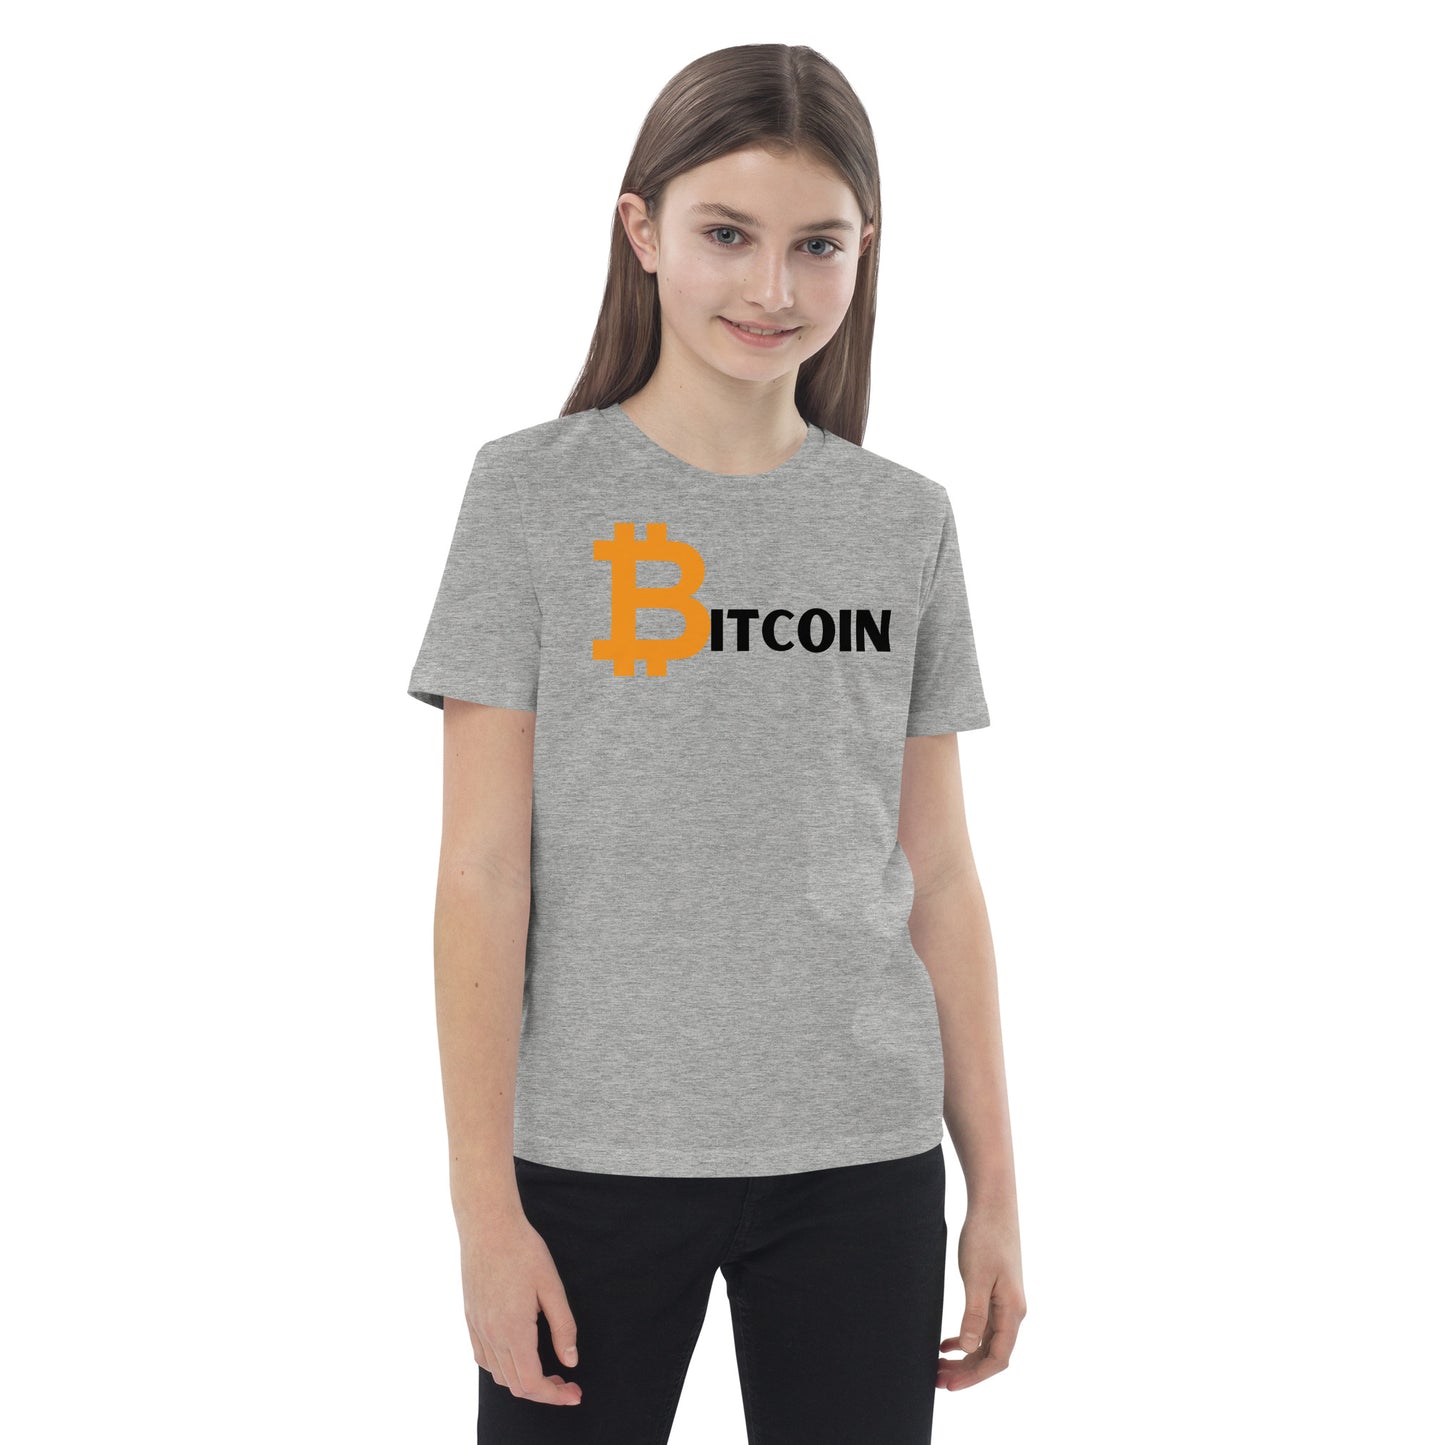 BITCOIN Kinder T-Shirt